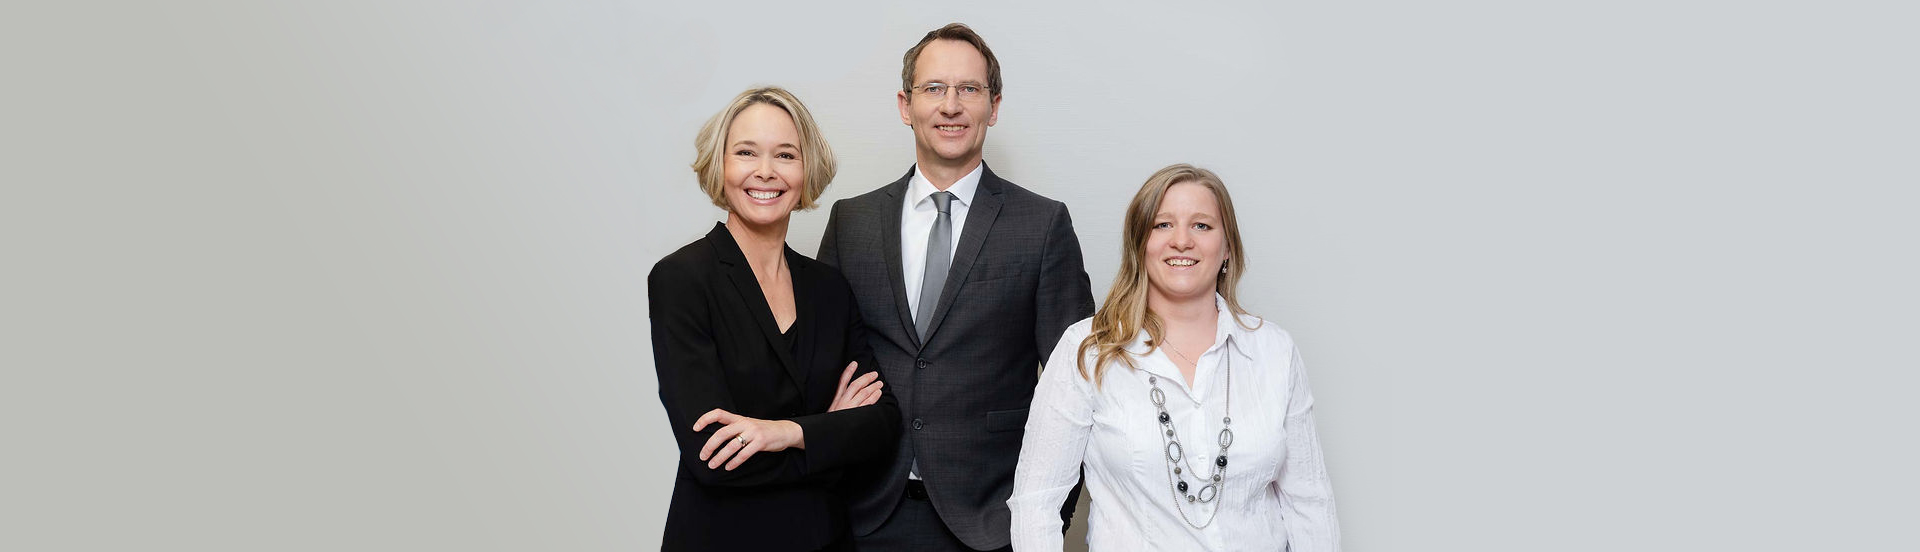 Dalheimer Rechtsanwälte - Team